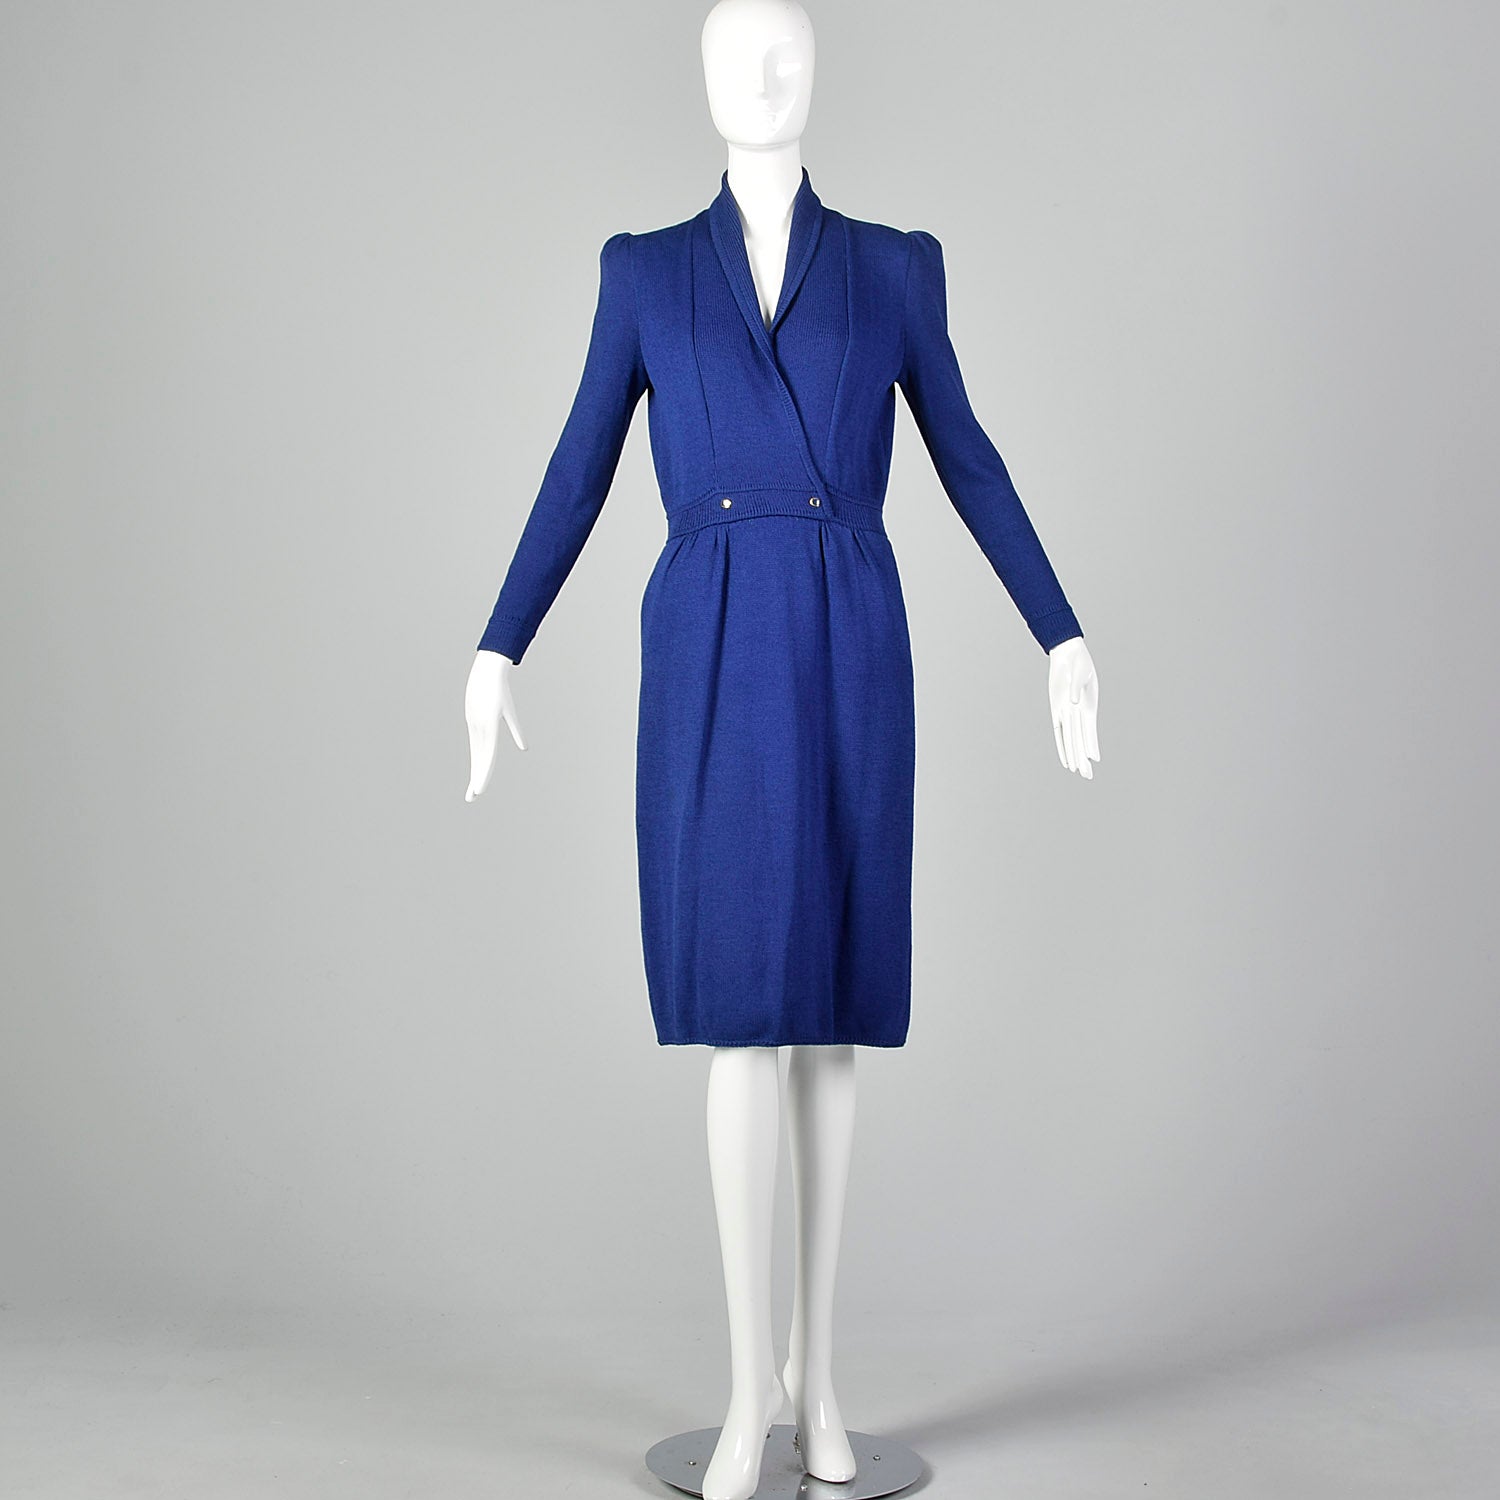 St. John 1980s Blue Faux Wrap Knit Dress